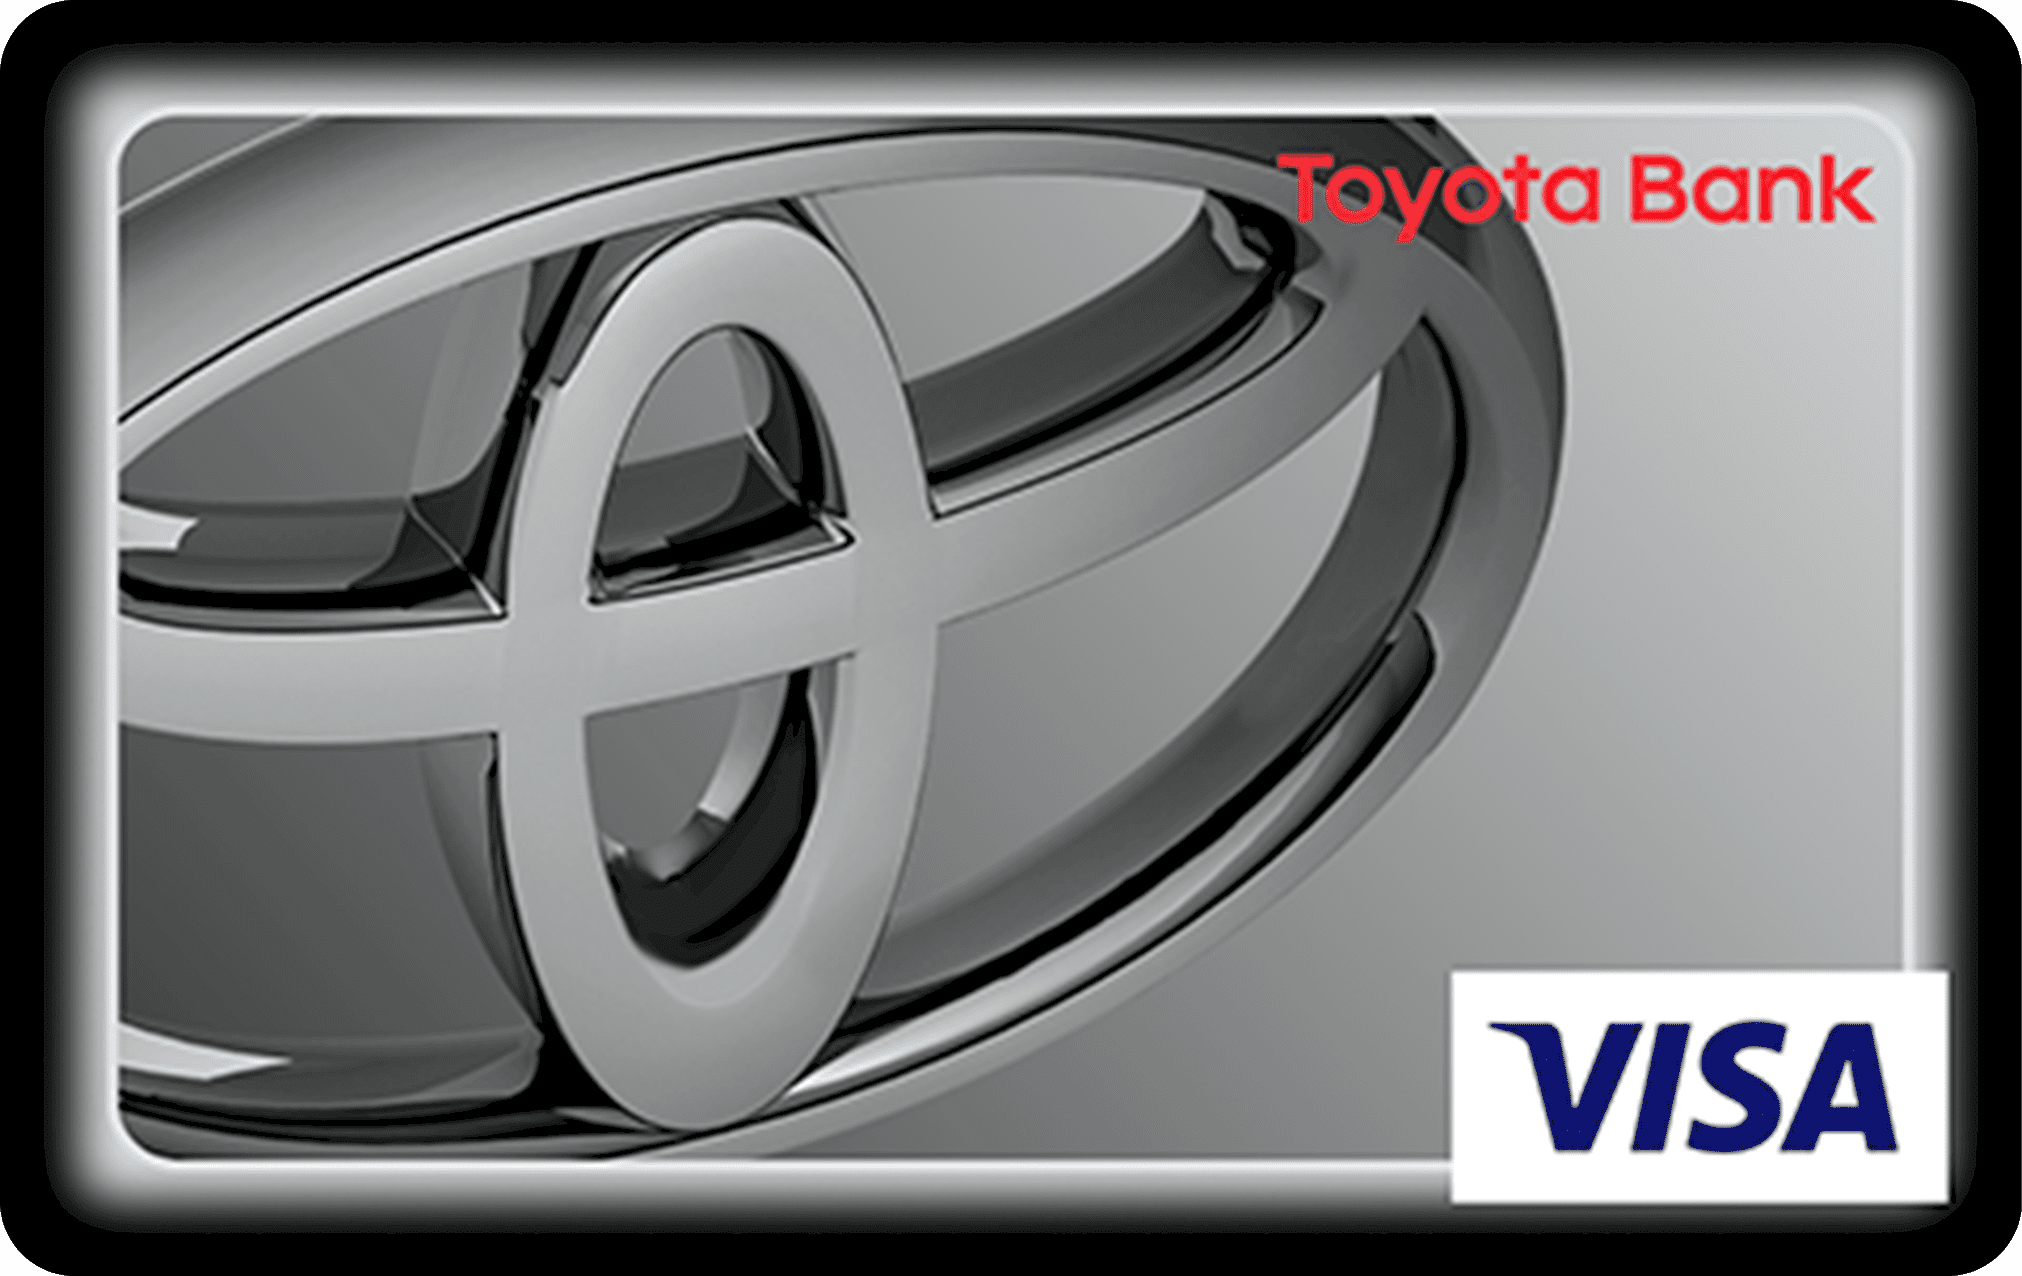 Toyota Bank kontakt, księgowanie przelewów, karty